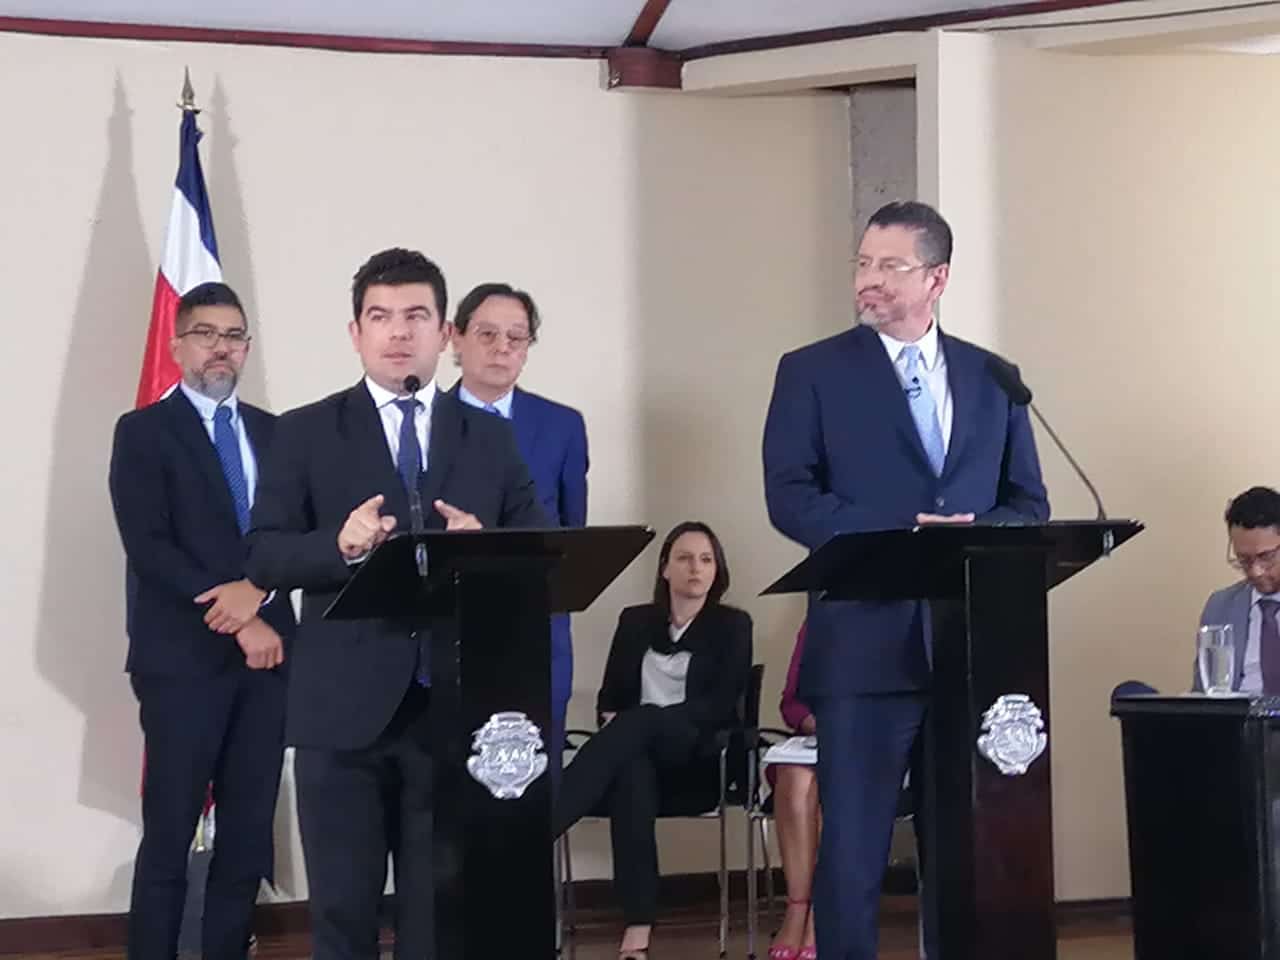 Gobierno resignado a pagar aumento en la CCSS; presidente Chaves vuelve a señalar a Álvaro Ramos y junta directiva de la institución